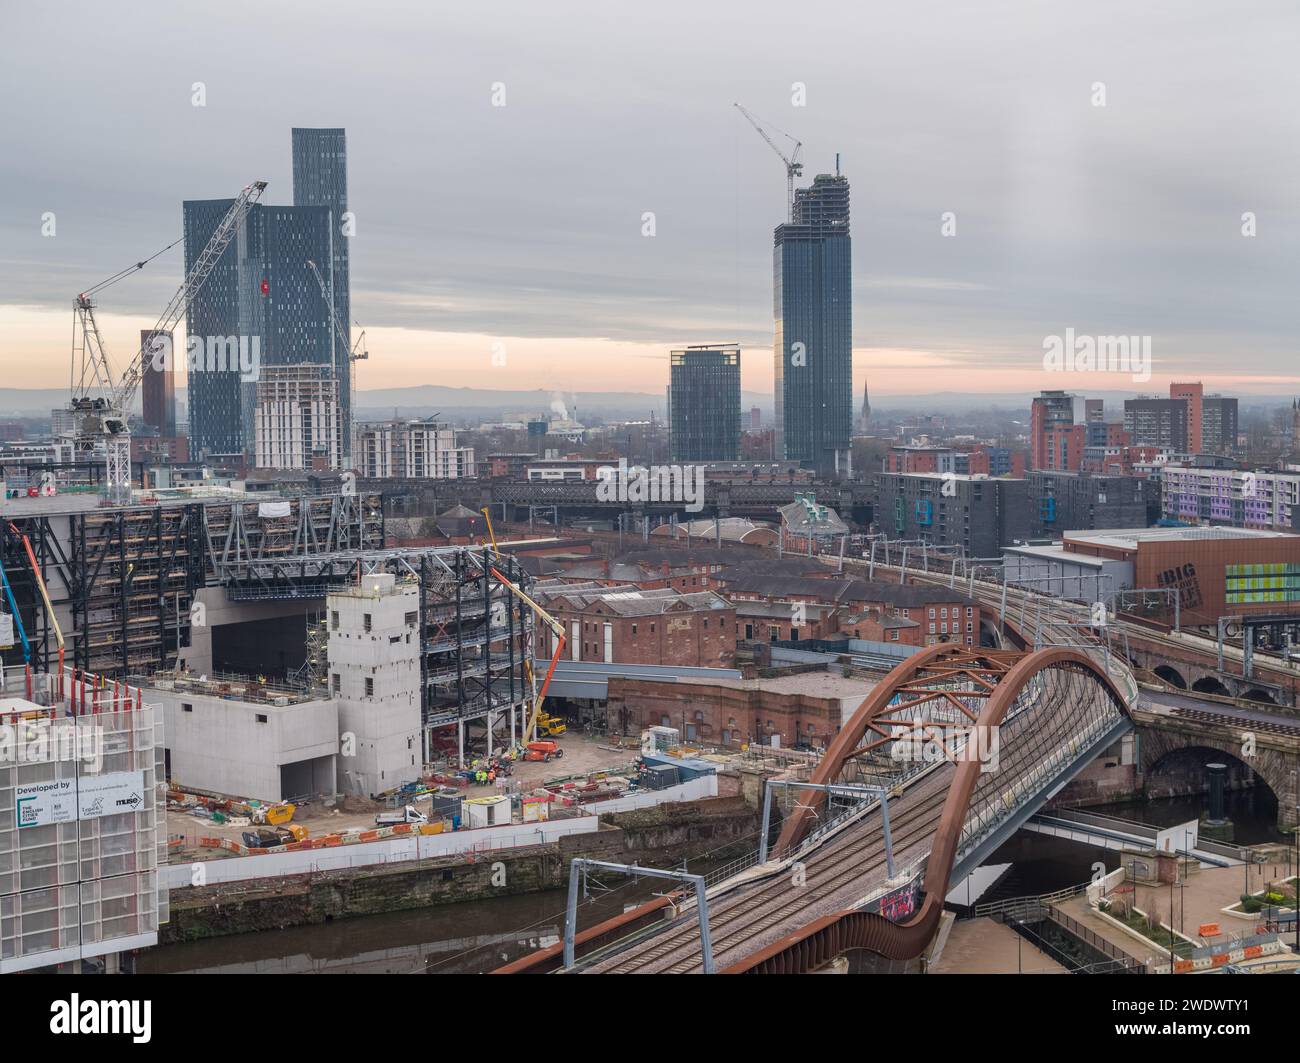 Foto aerea della linea ferroviaria e del ponte Ordsall Chord, con Aviva Studios in costruzione nel centro di Manchester, Regno Unito Foto Stock